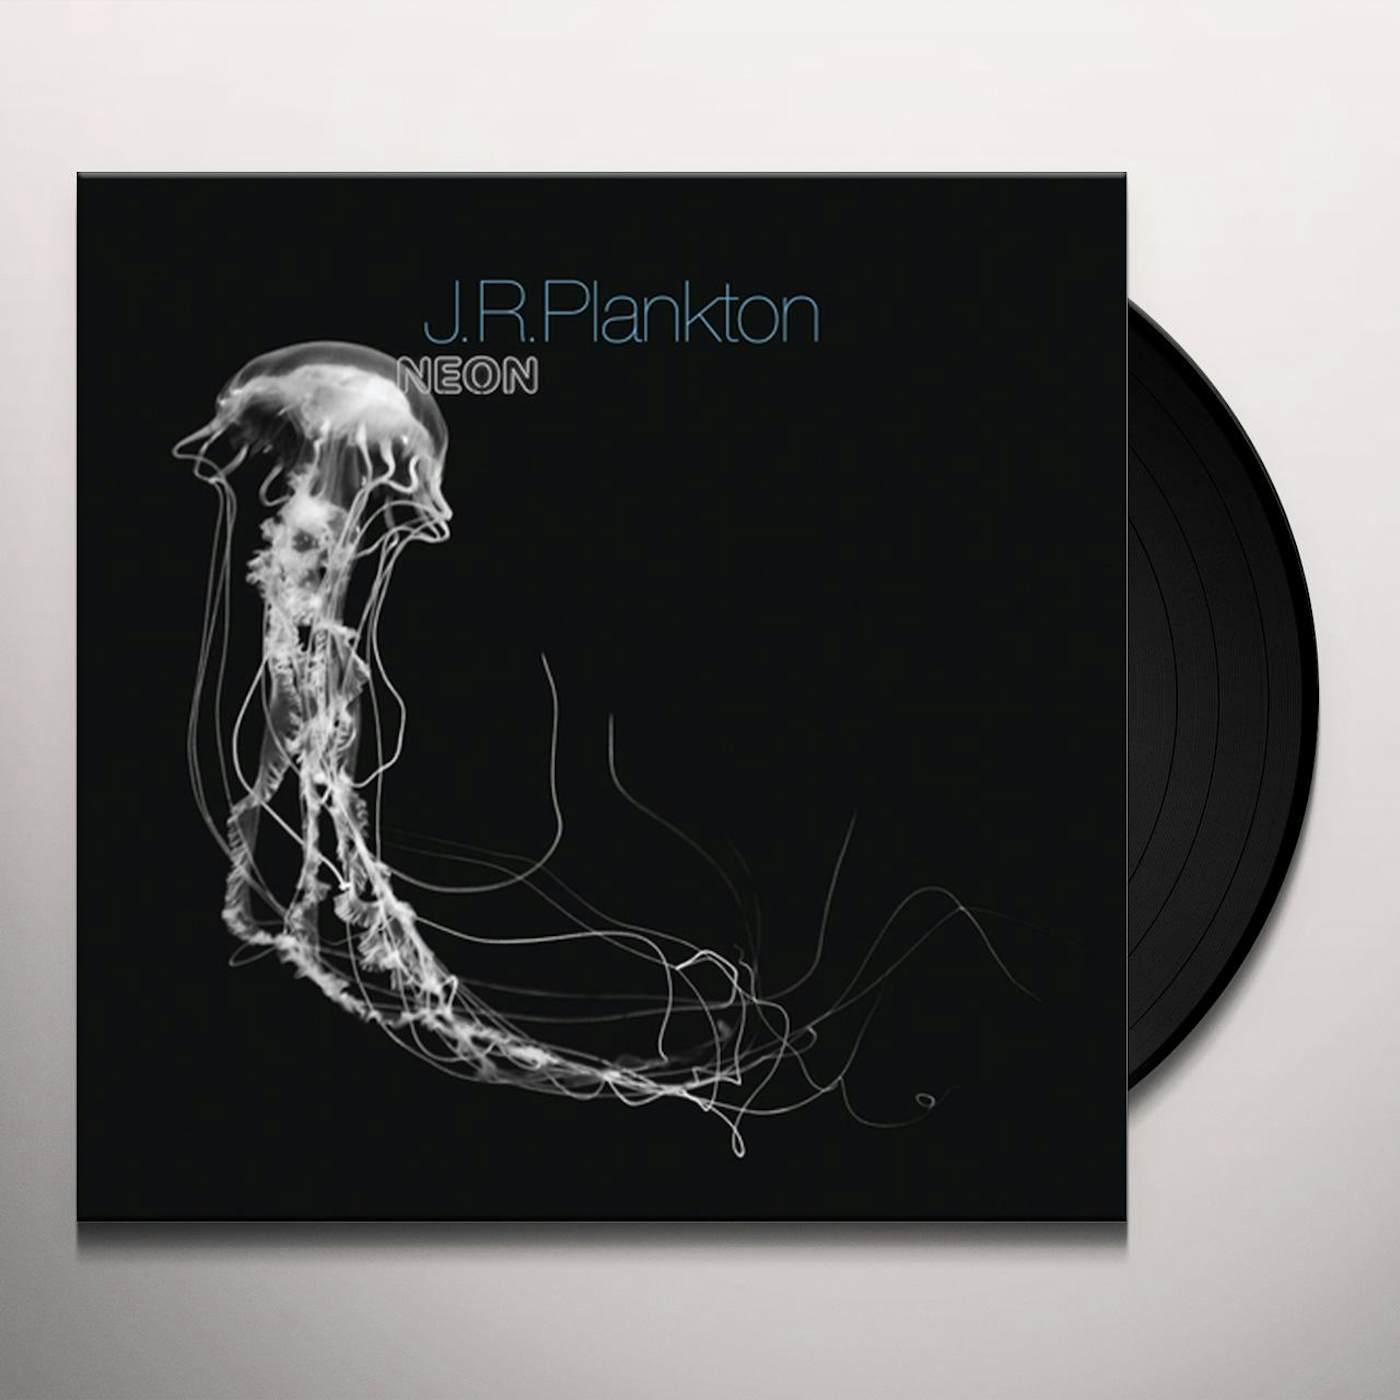 J.R.Plankton Neon Vinyl Record